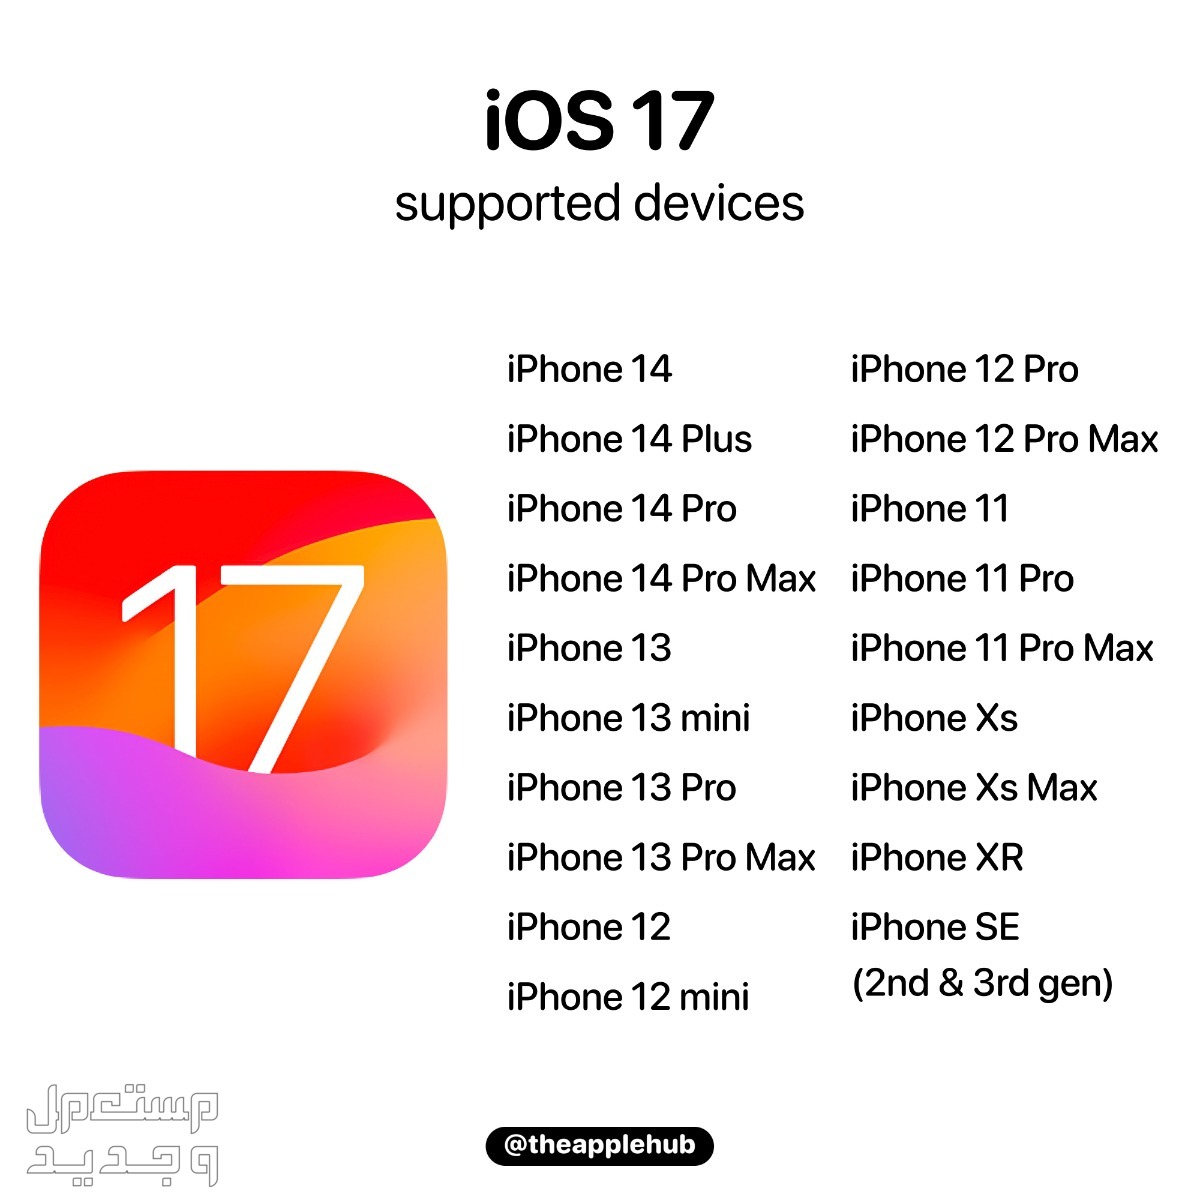 نظام iOS 17 لهواتف ايفون بمميزات جديدة تعرف عليها في قطر